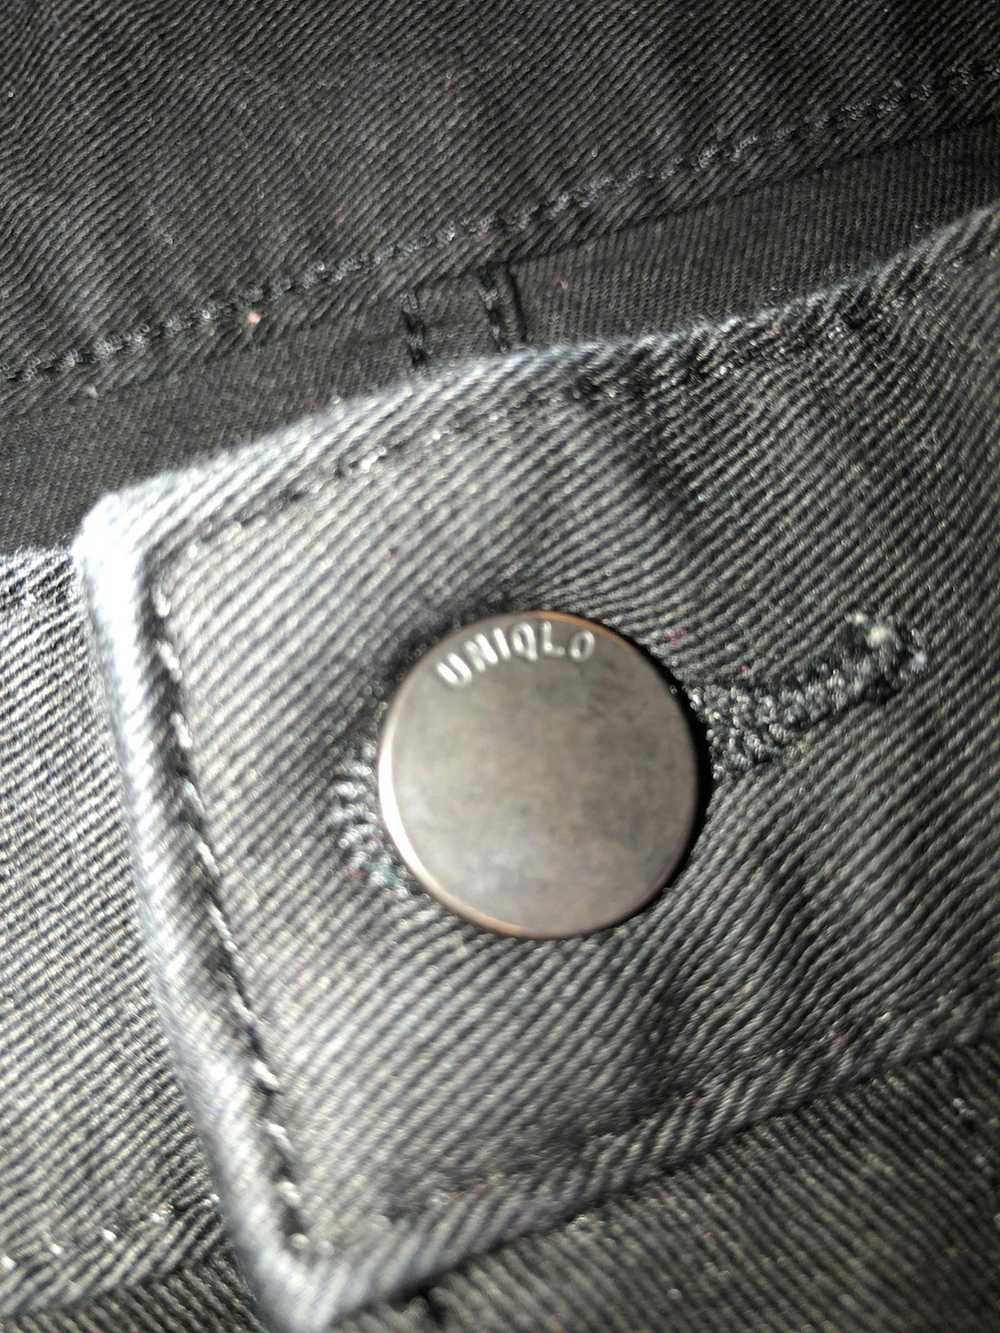 Uniqlo Uniqlo Black Jeans - image 3